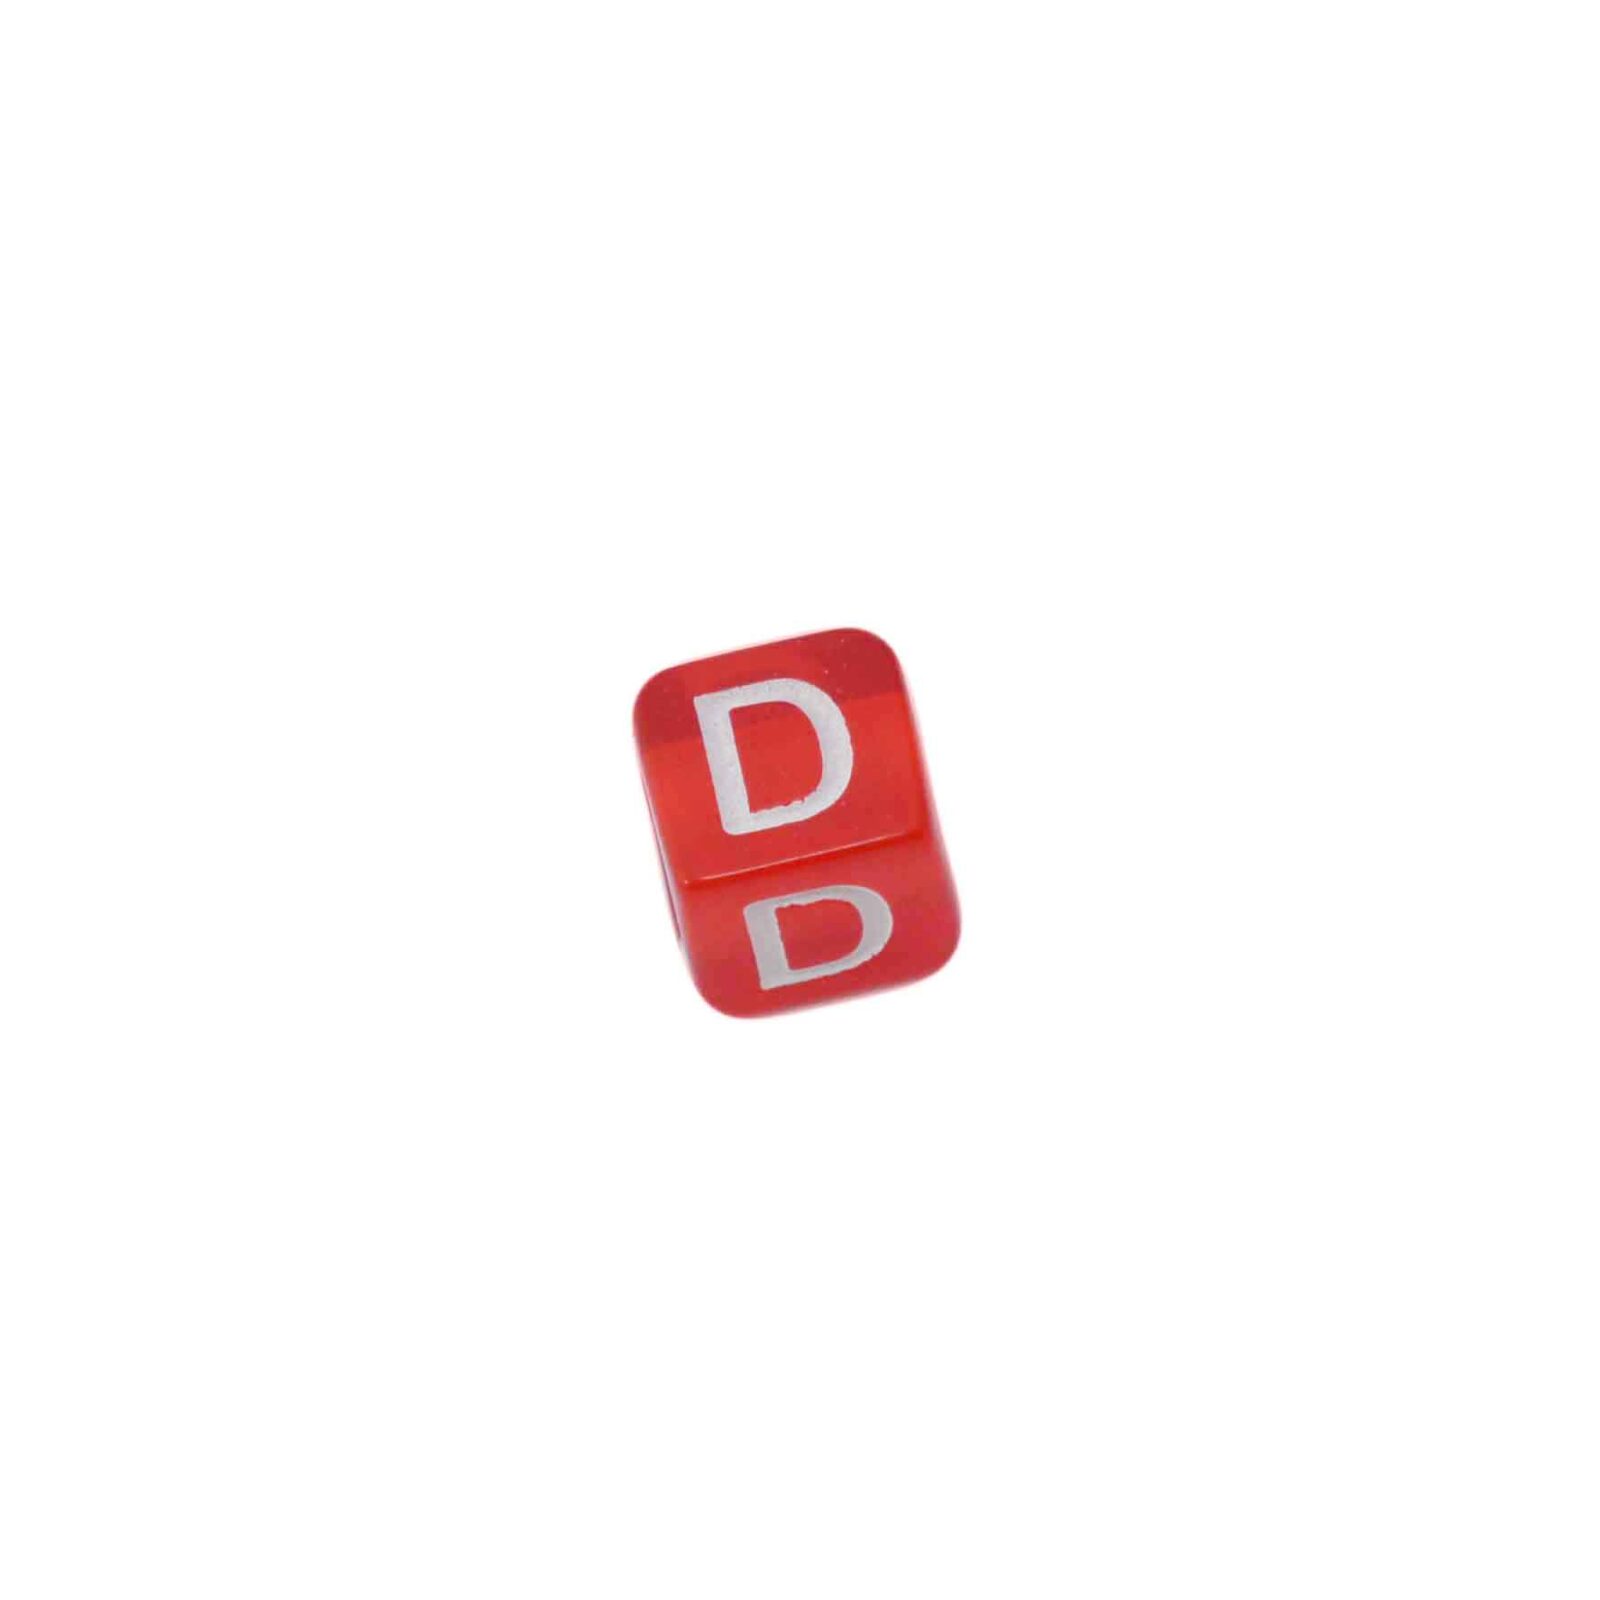 Rode letterkraal D